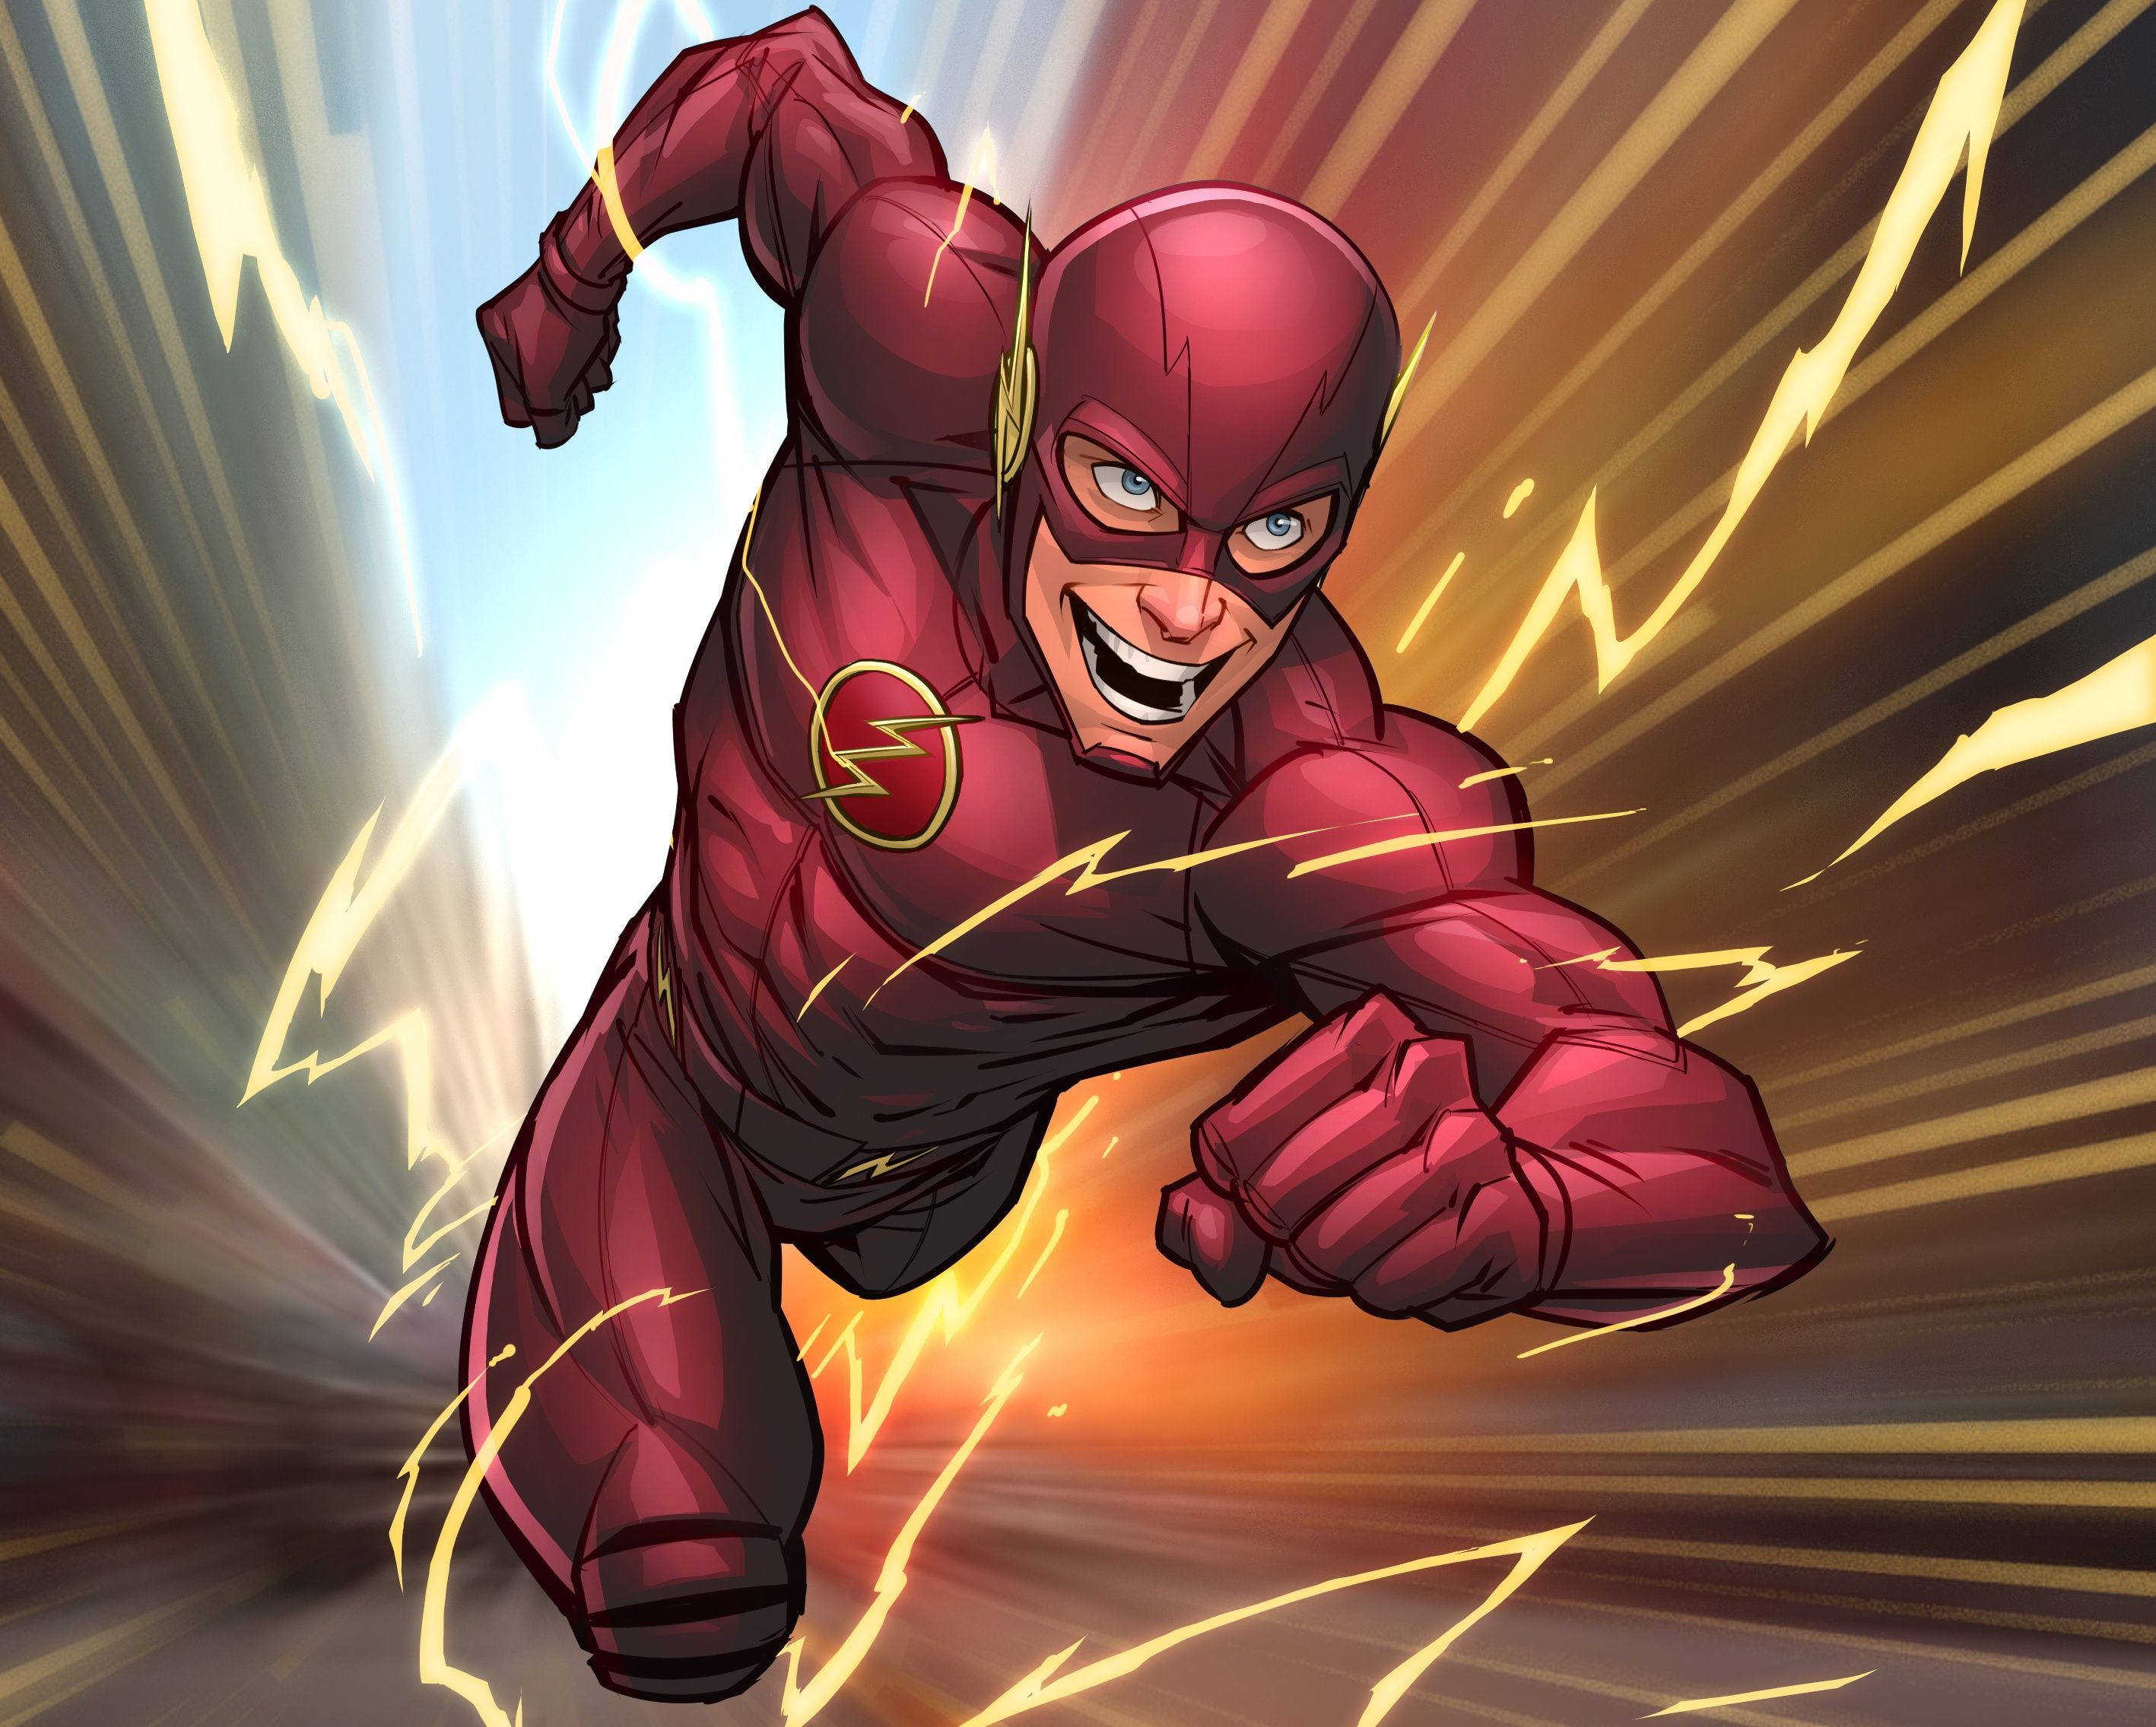 Comics Flash Injustice 2 HD Wallpaper Background Image. Superhero comics art, Flash wallpaper, Superhero wallpaper